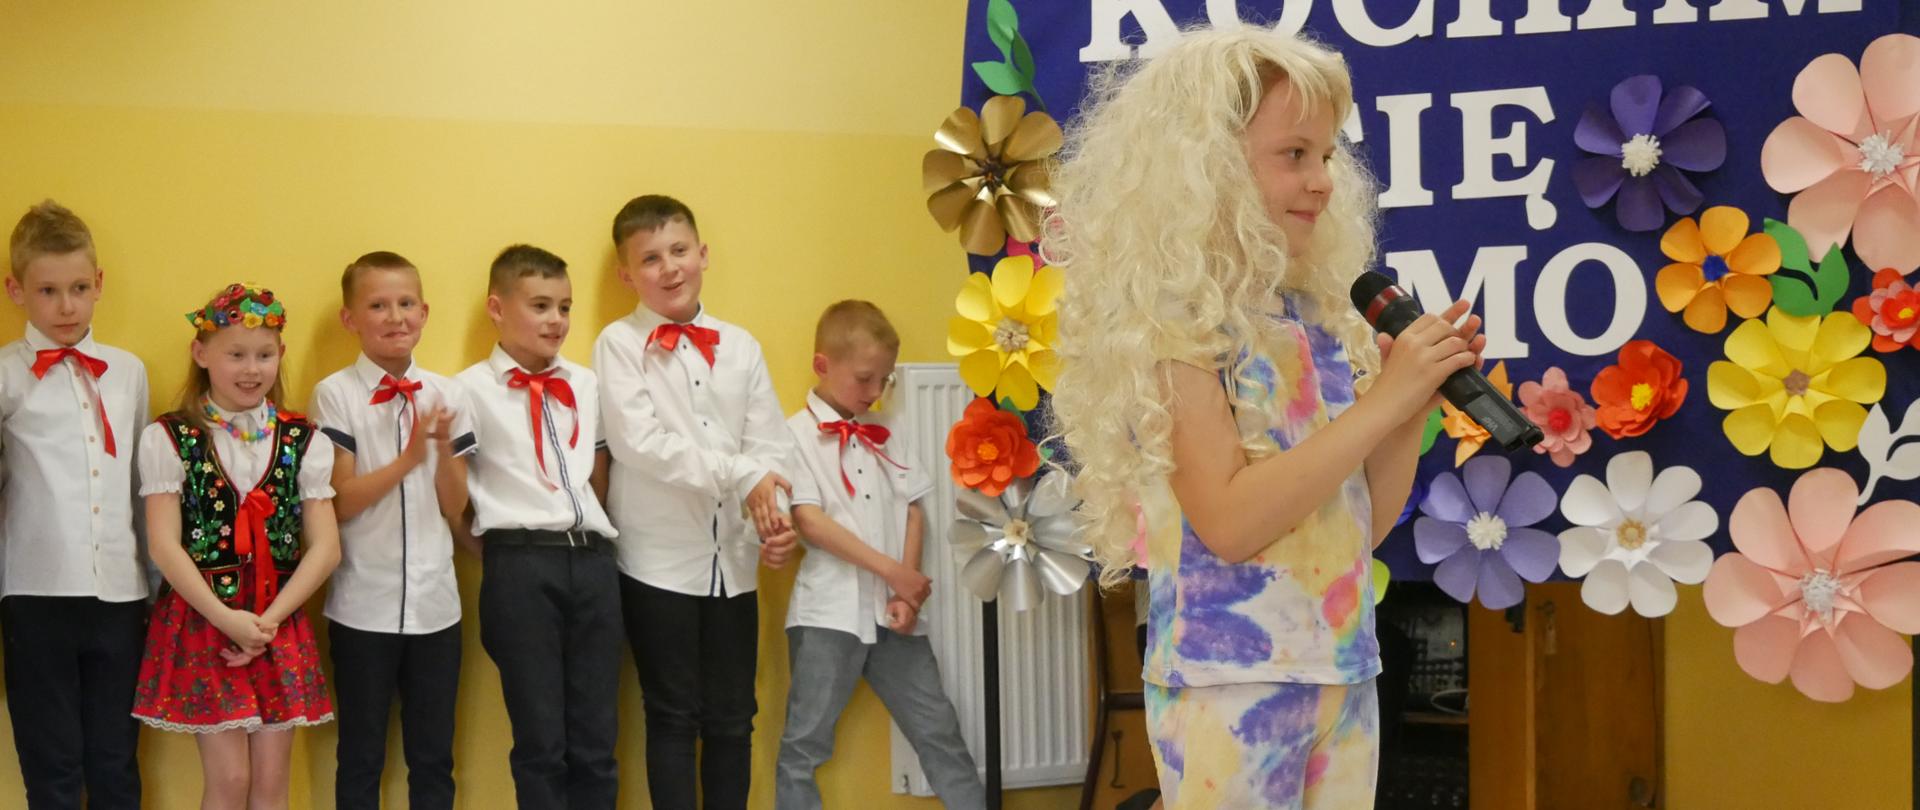 Dziewczynka śpiewa piosenkę Majki Jeżowskiej. W tle widać dekorację z kwiatów oraz stojące dzieci: dziewczynki w krakowskich strojach i elegancko ubranych chłopców.